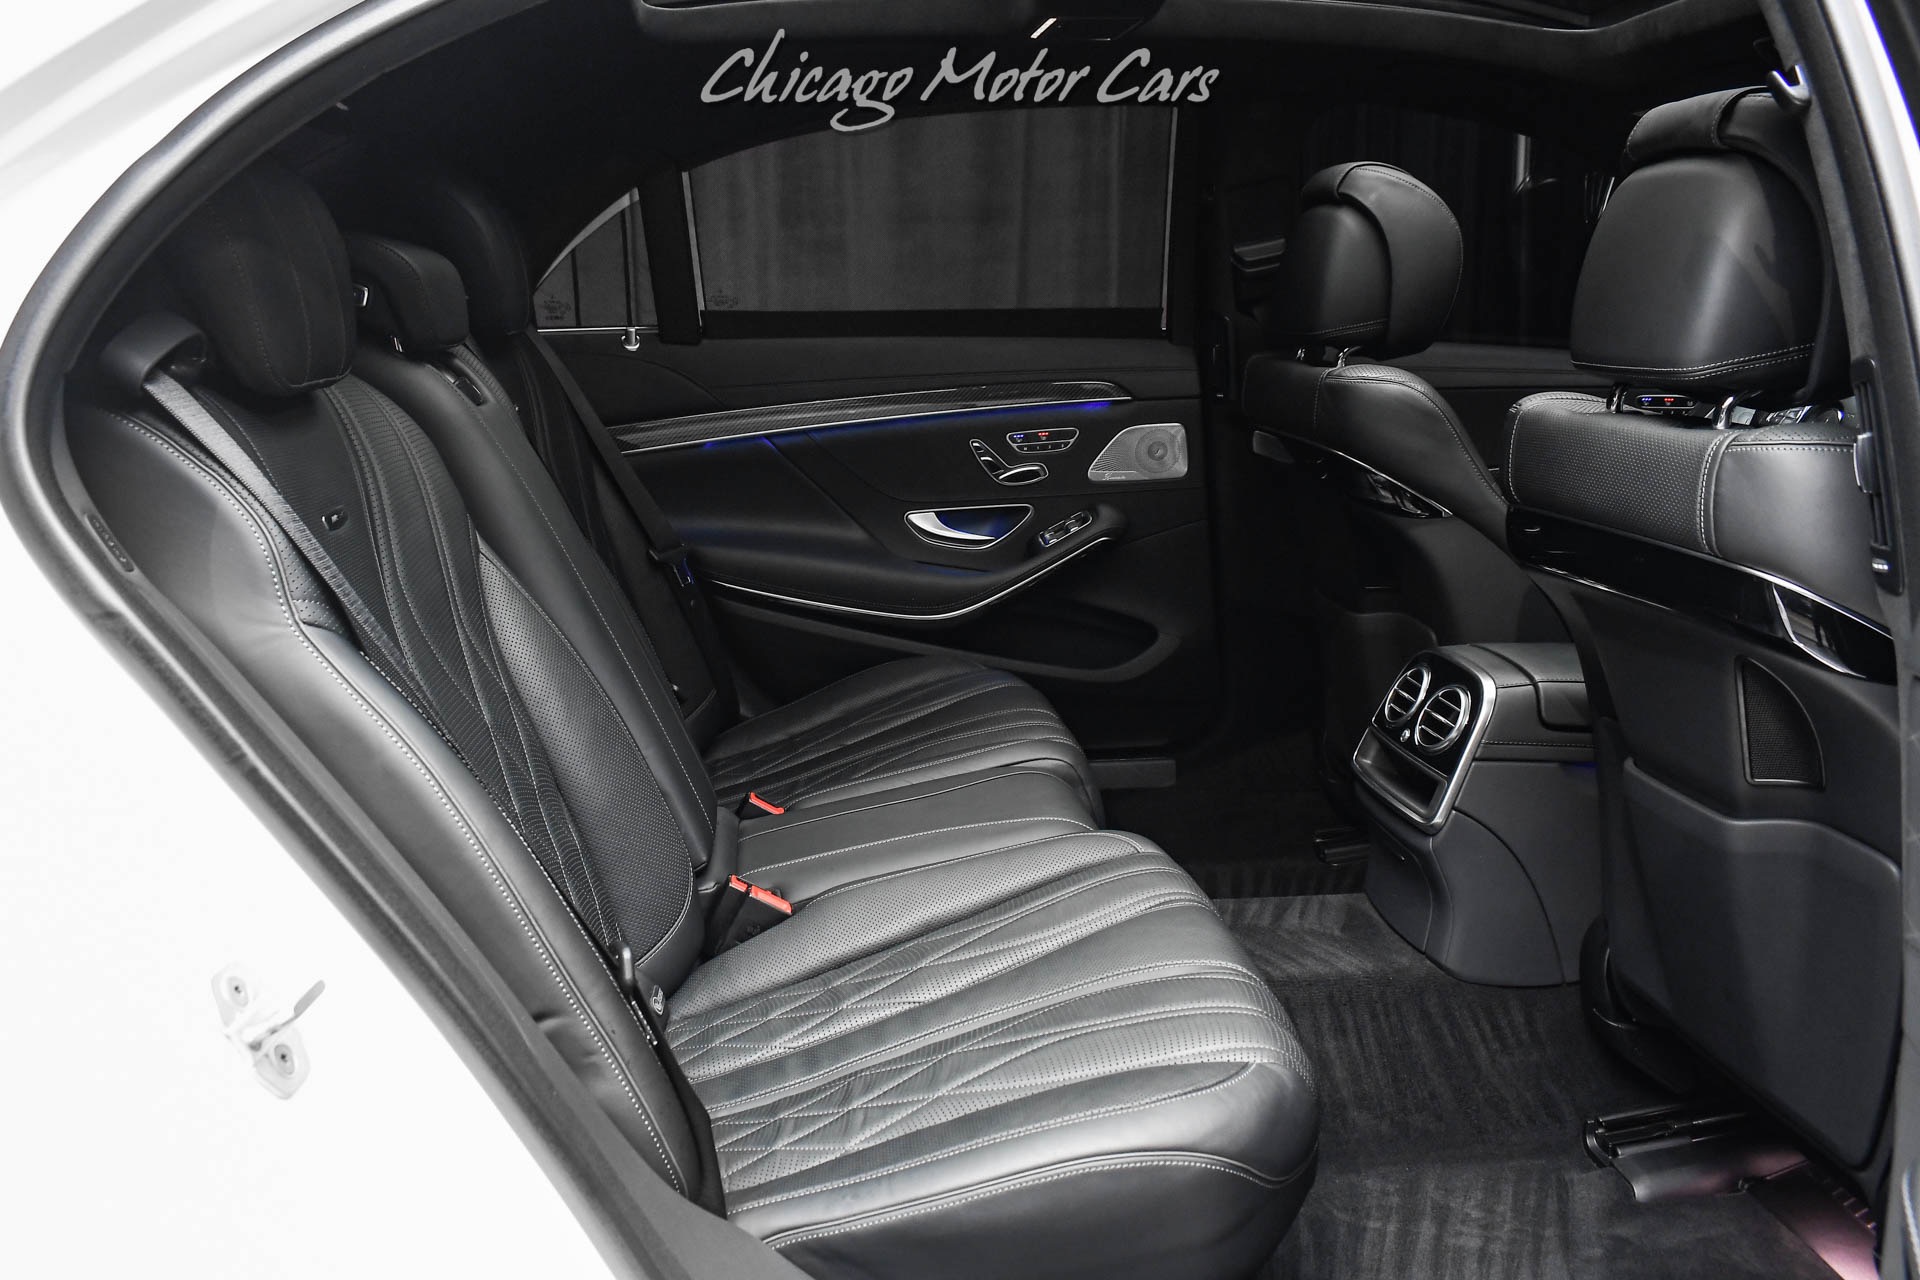 Used-2017-Mercedes-Benz-S63-AMG-Sedan-MSRP-165K-Exclusive-Trim-Pkg-Comfort-Pkg-Carbon-Trim-LOADED